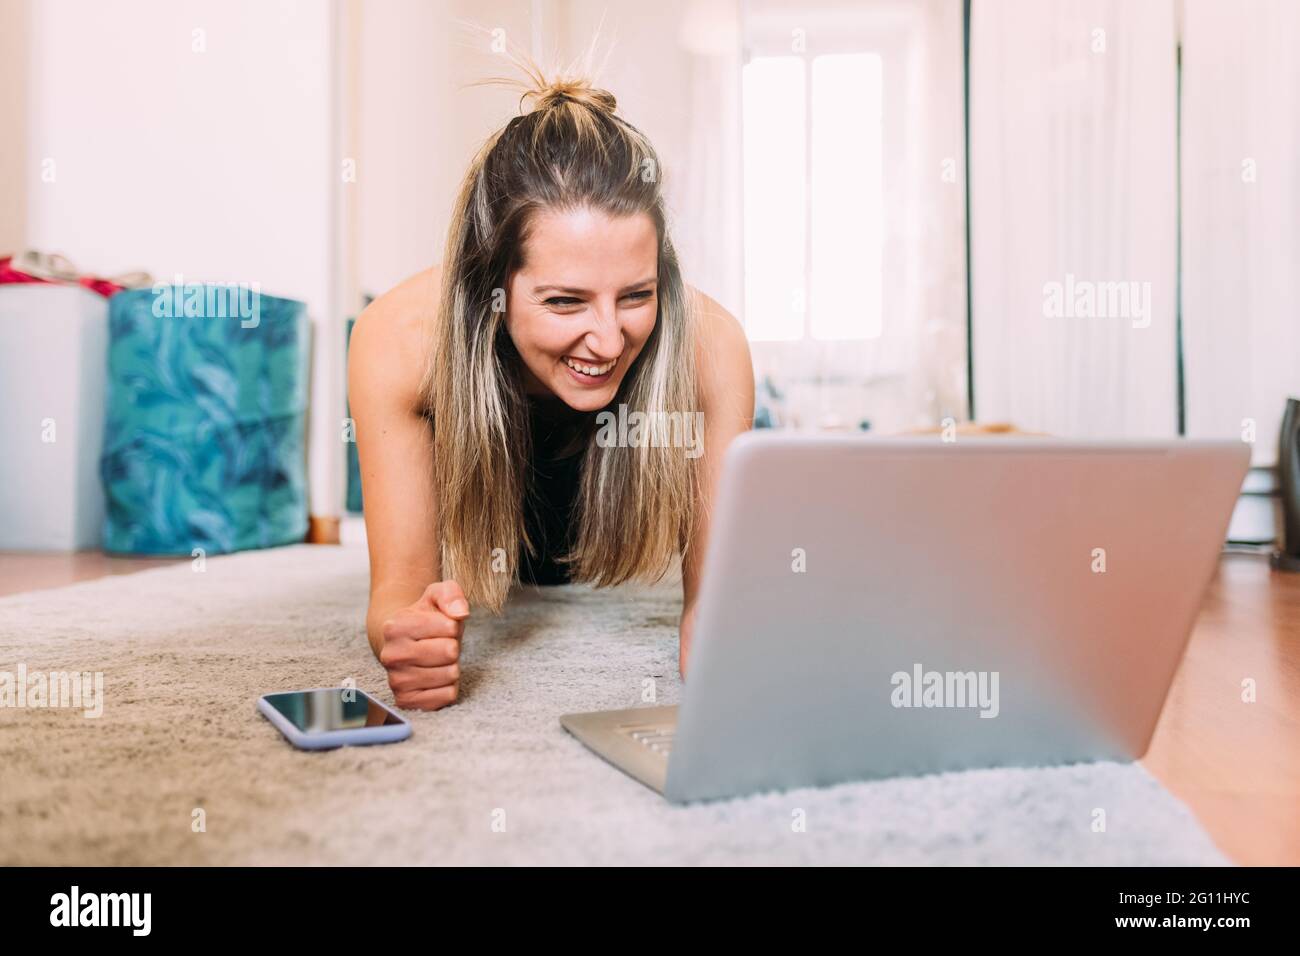 Italia, giovane donna che usa il laptop sul pavimento Foto Stock